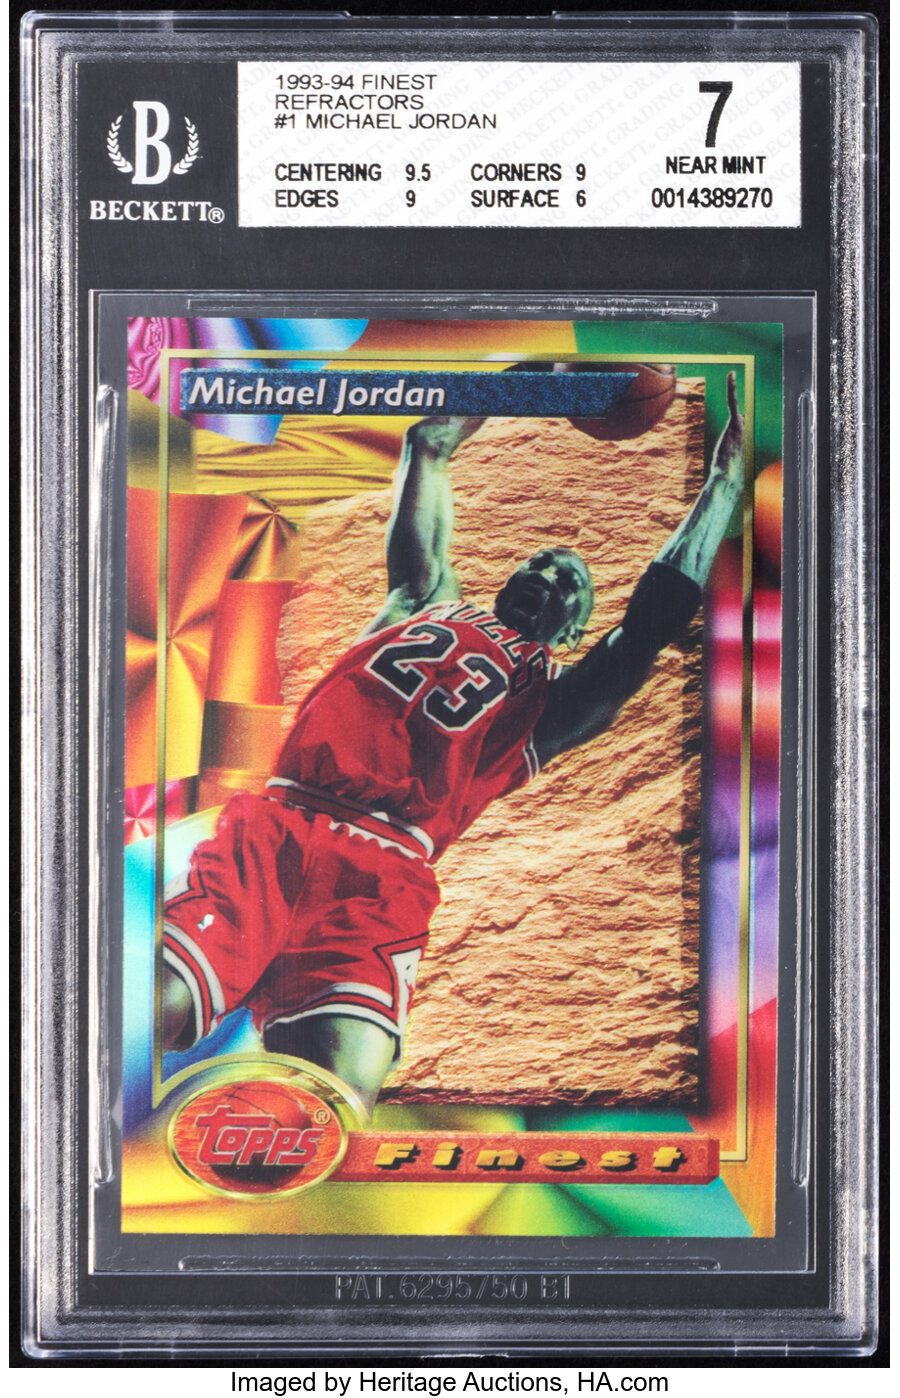 1993 Topps Finest Michael Jordan (Refractor) #1 BGS NM 7